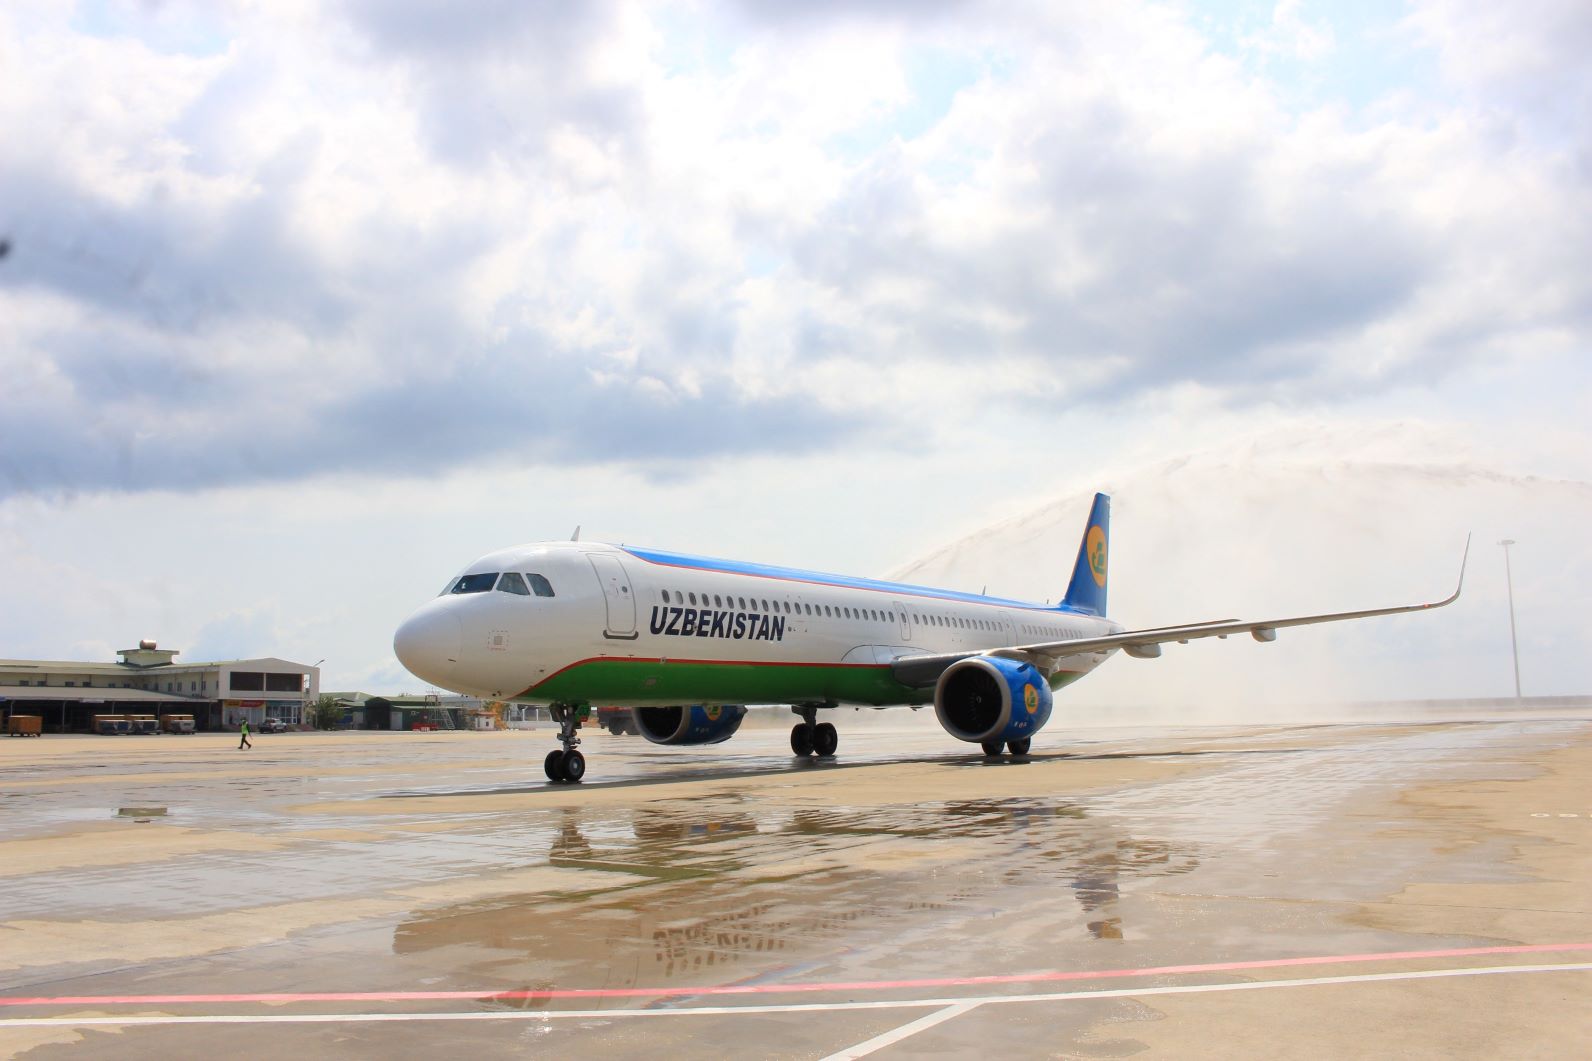 Chuyến bay đầu tiên của hãng hàng không Uzbekistan Airways trở lại Cảng hàng không quốc tế Cam Ranh sau thời gian phải tạm dừng khai thác. Ảnh: X.Hướng